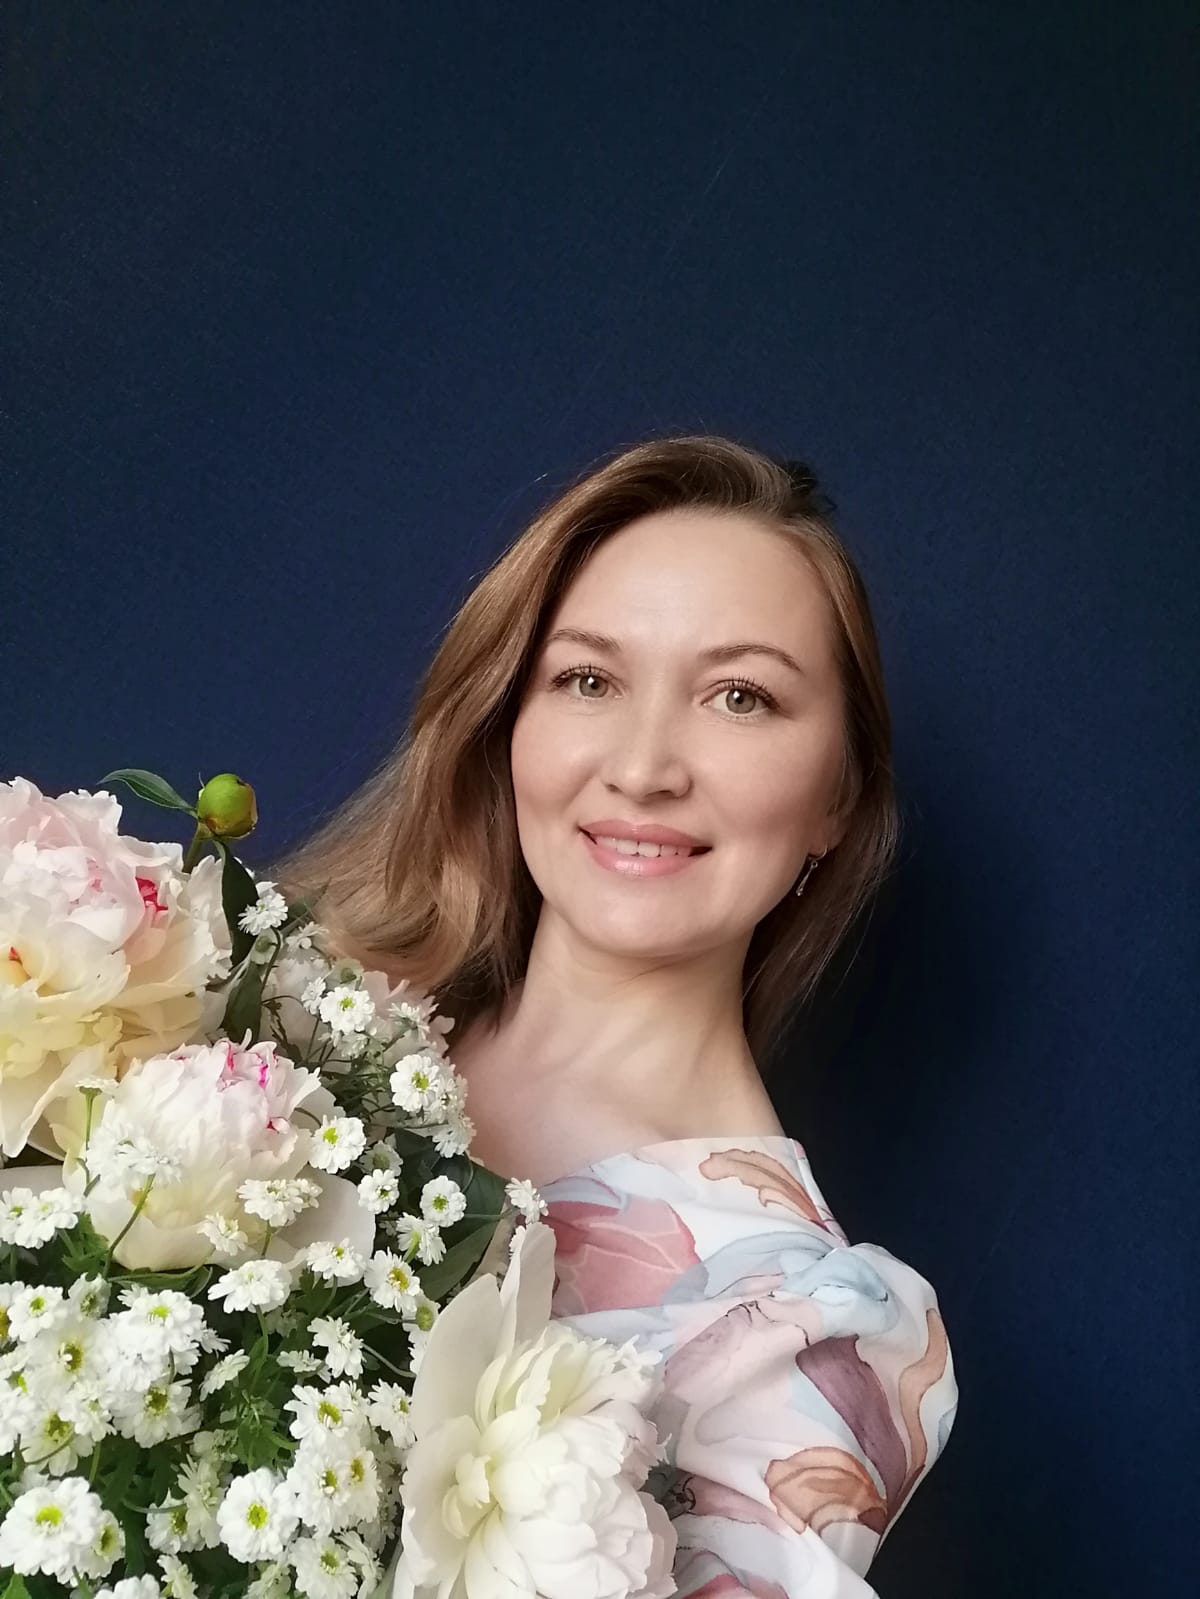 Сегодня свой день рождения отмечает артист балета (солист) Нефтекамской государственной филармонии Вера Николаева